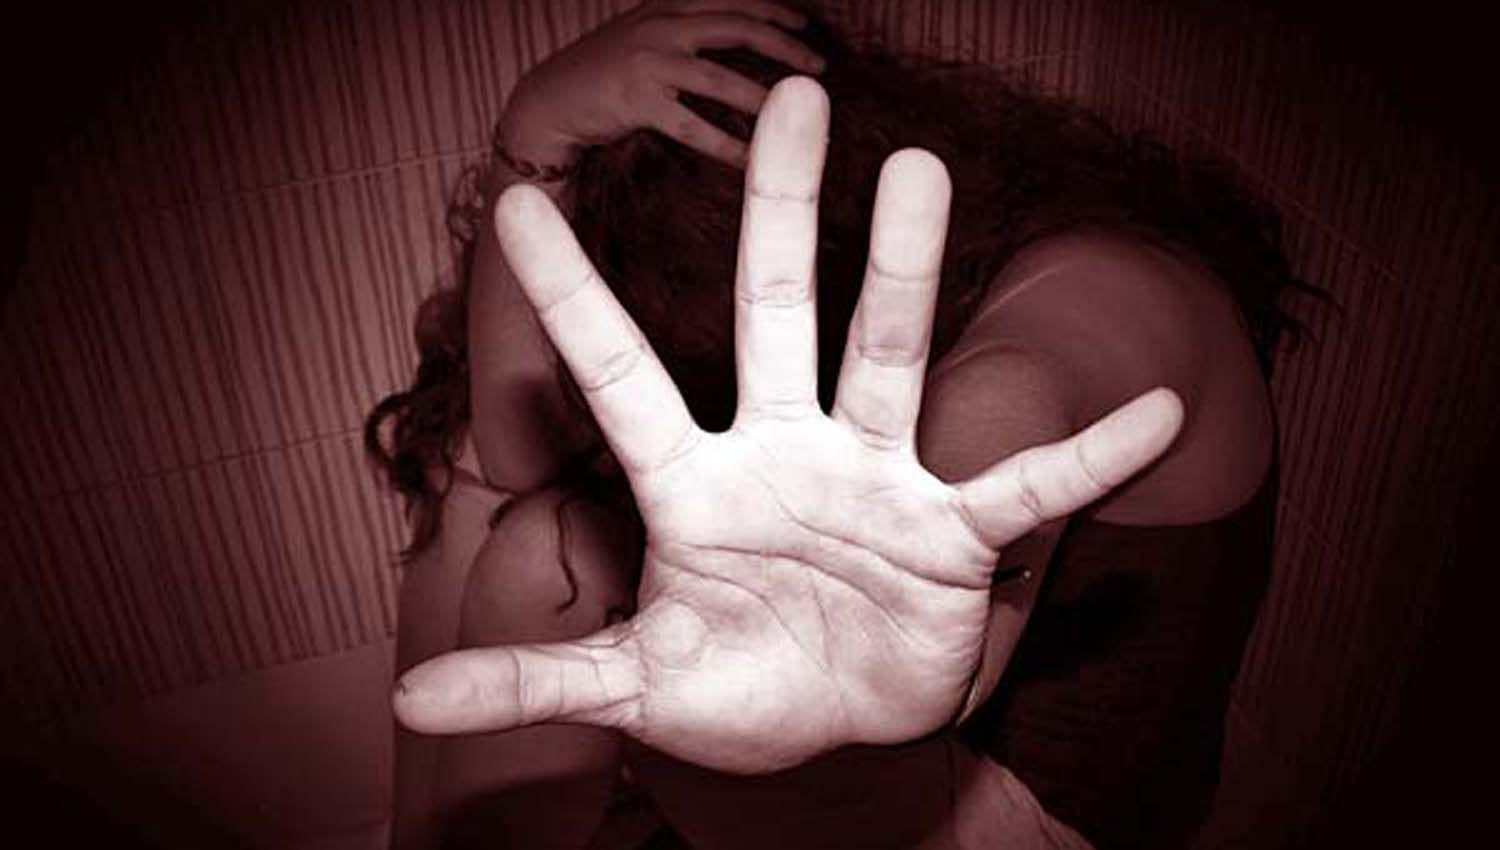 Salvaje sujeto terminoacute detenido tras secuestrar y violar a su novia durante 6 diacuteas